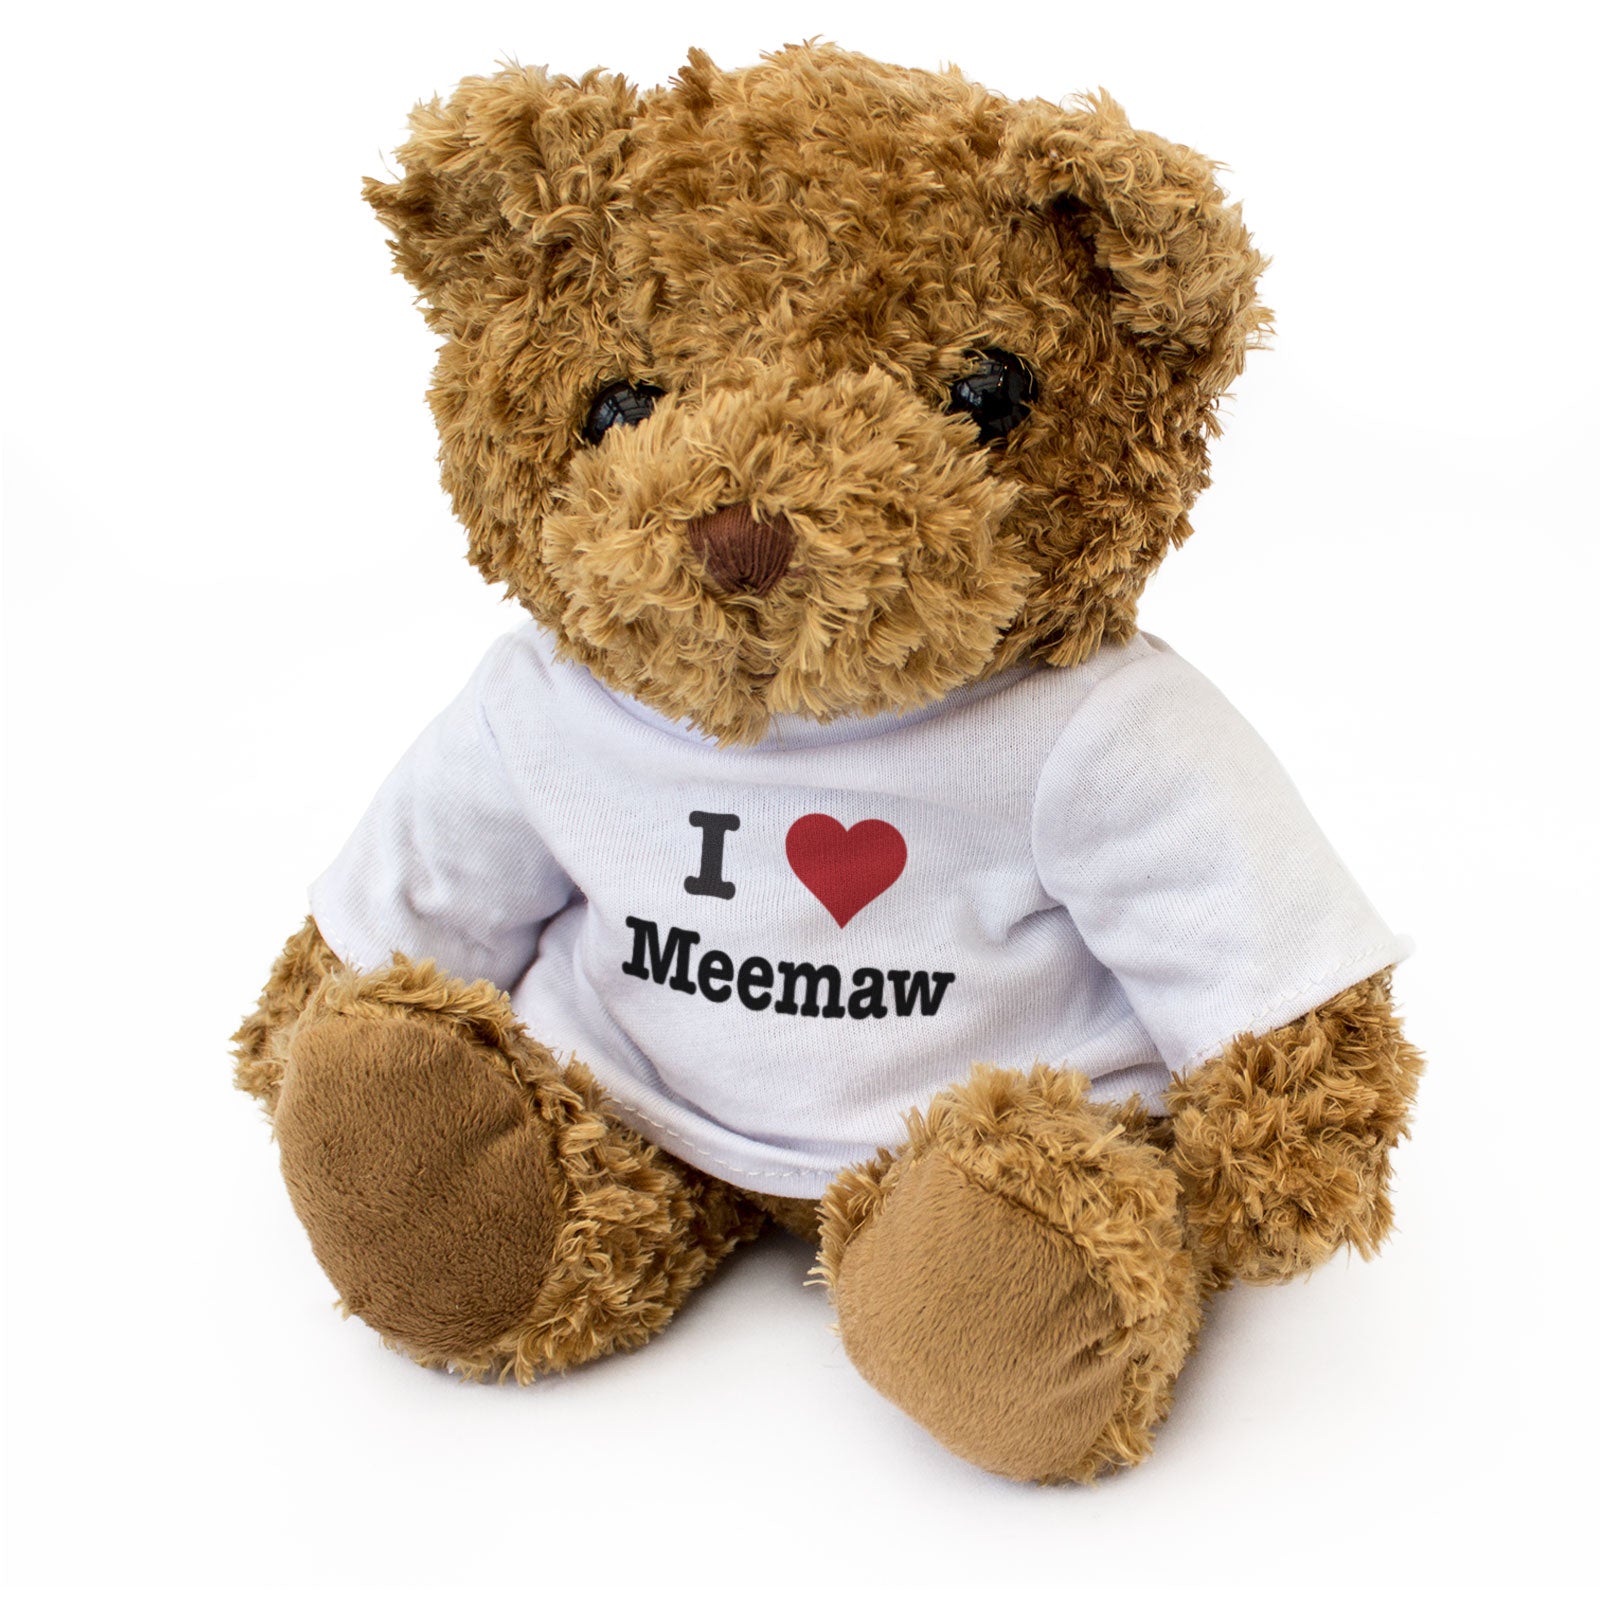 I Love Meemaw - Teddy Bear